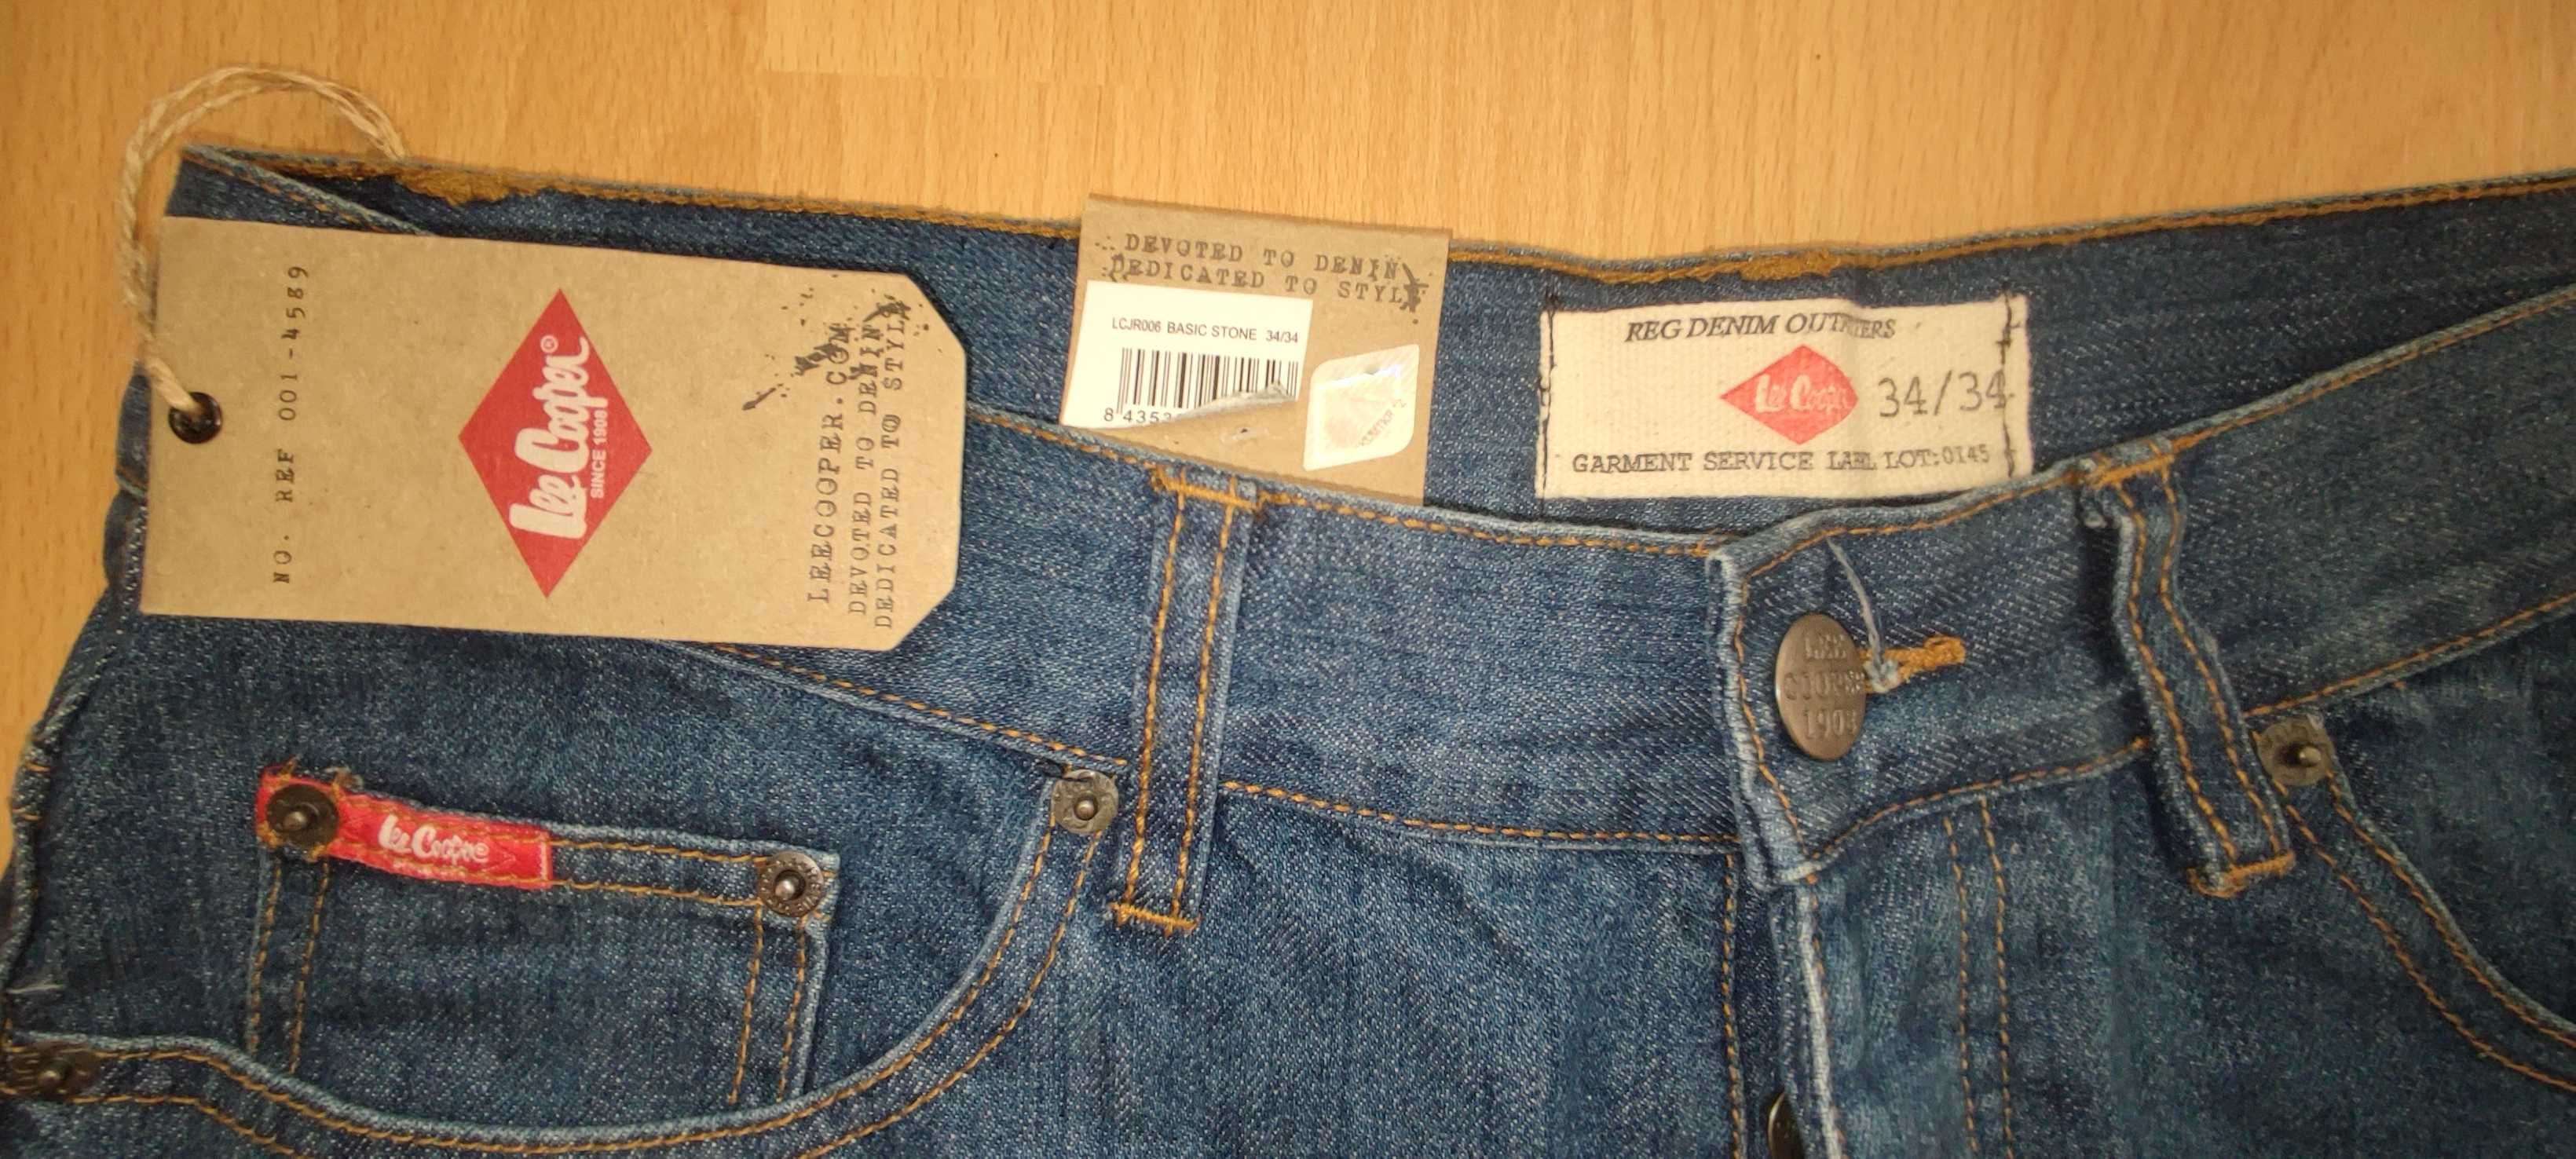 Lee Cooper W34/L34_нові оригінальні брендові джинси штани брюки